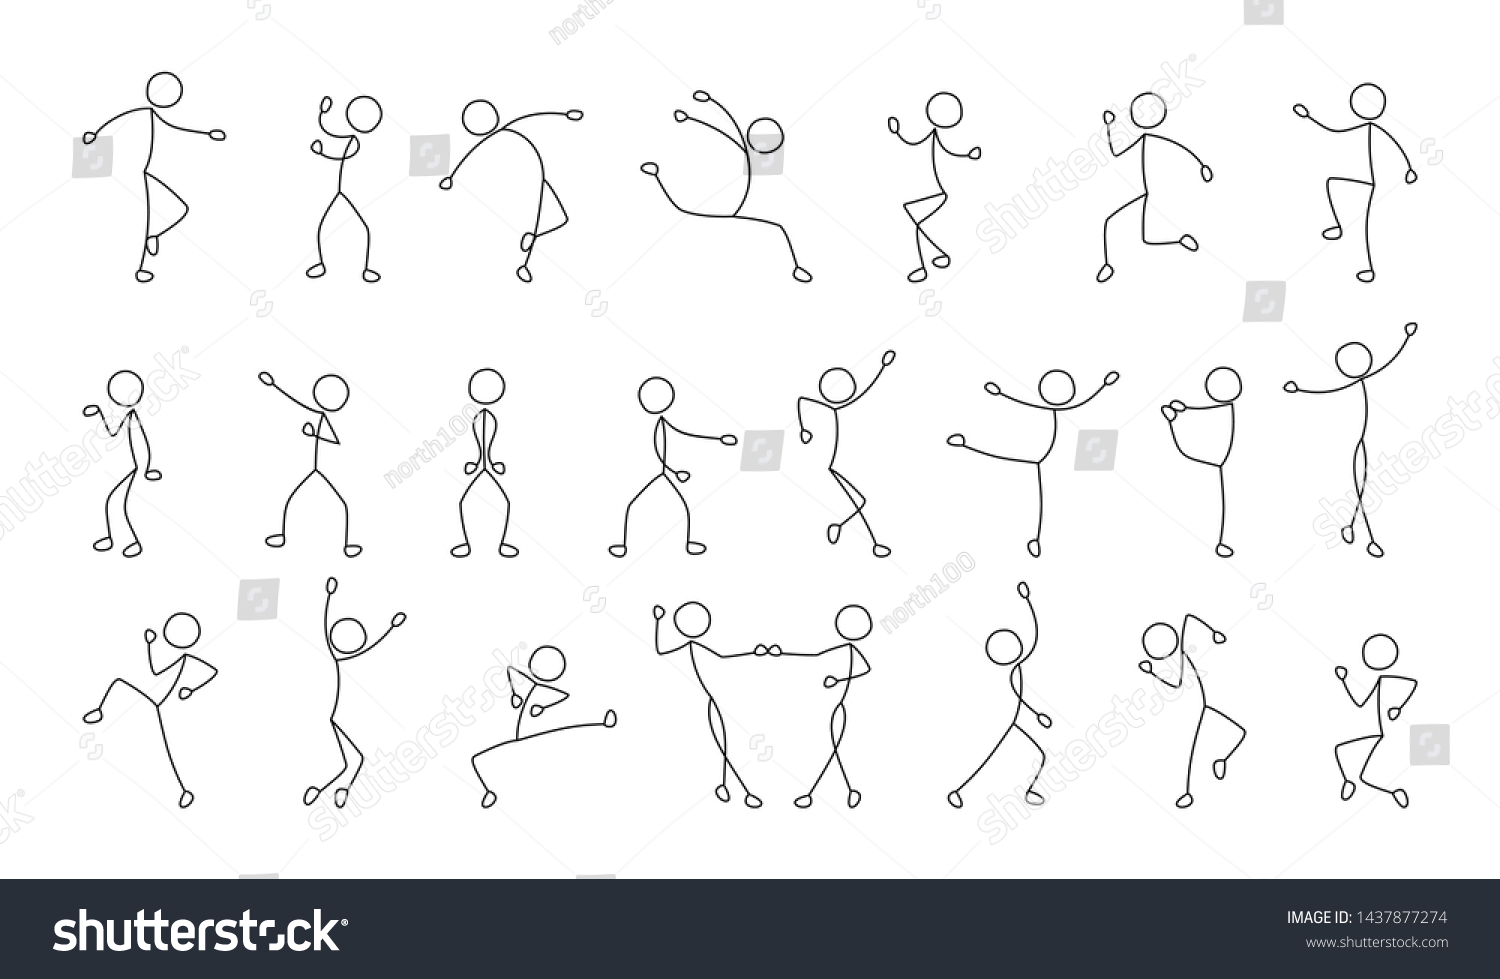 танцующие человечки картинки для детей